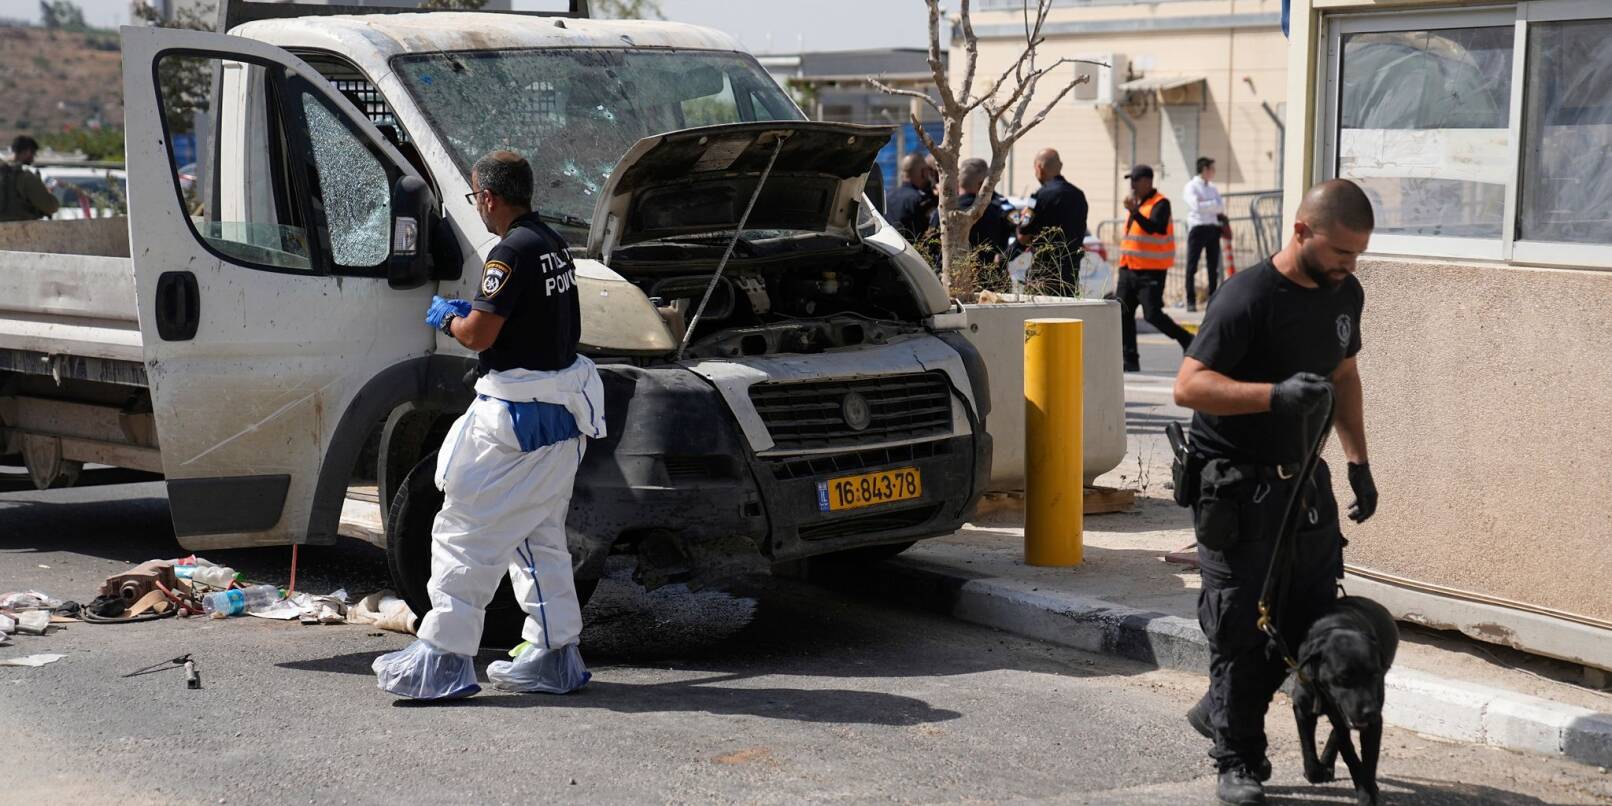 Israelische Sicherheitskräfte inspizieren den Schauplatz einer mutmaßlichen Auto-Attacke.